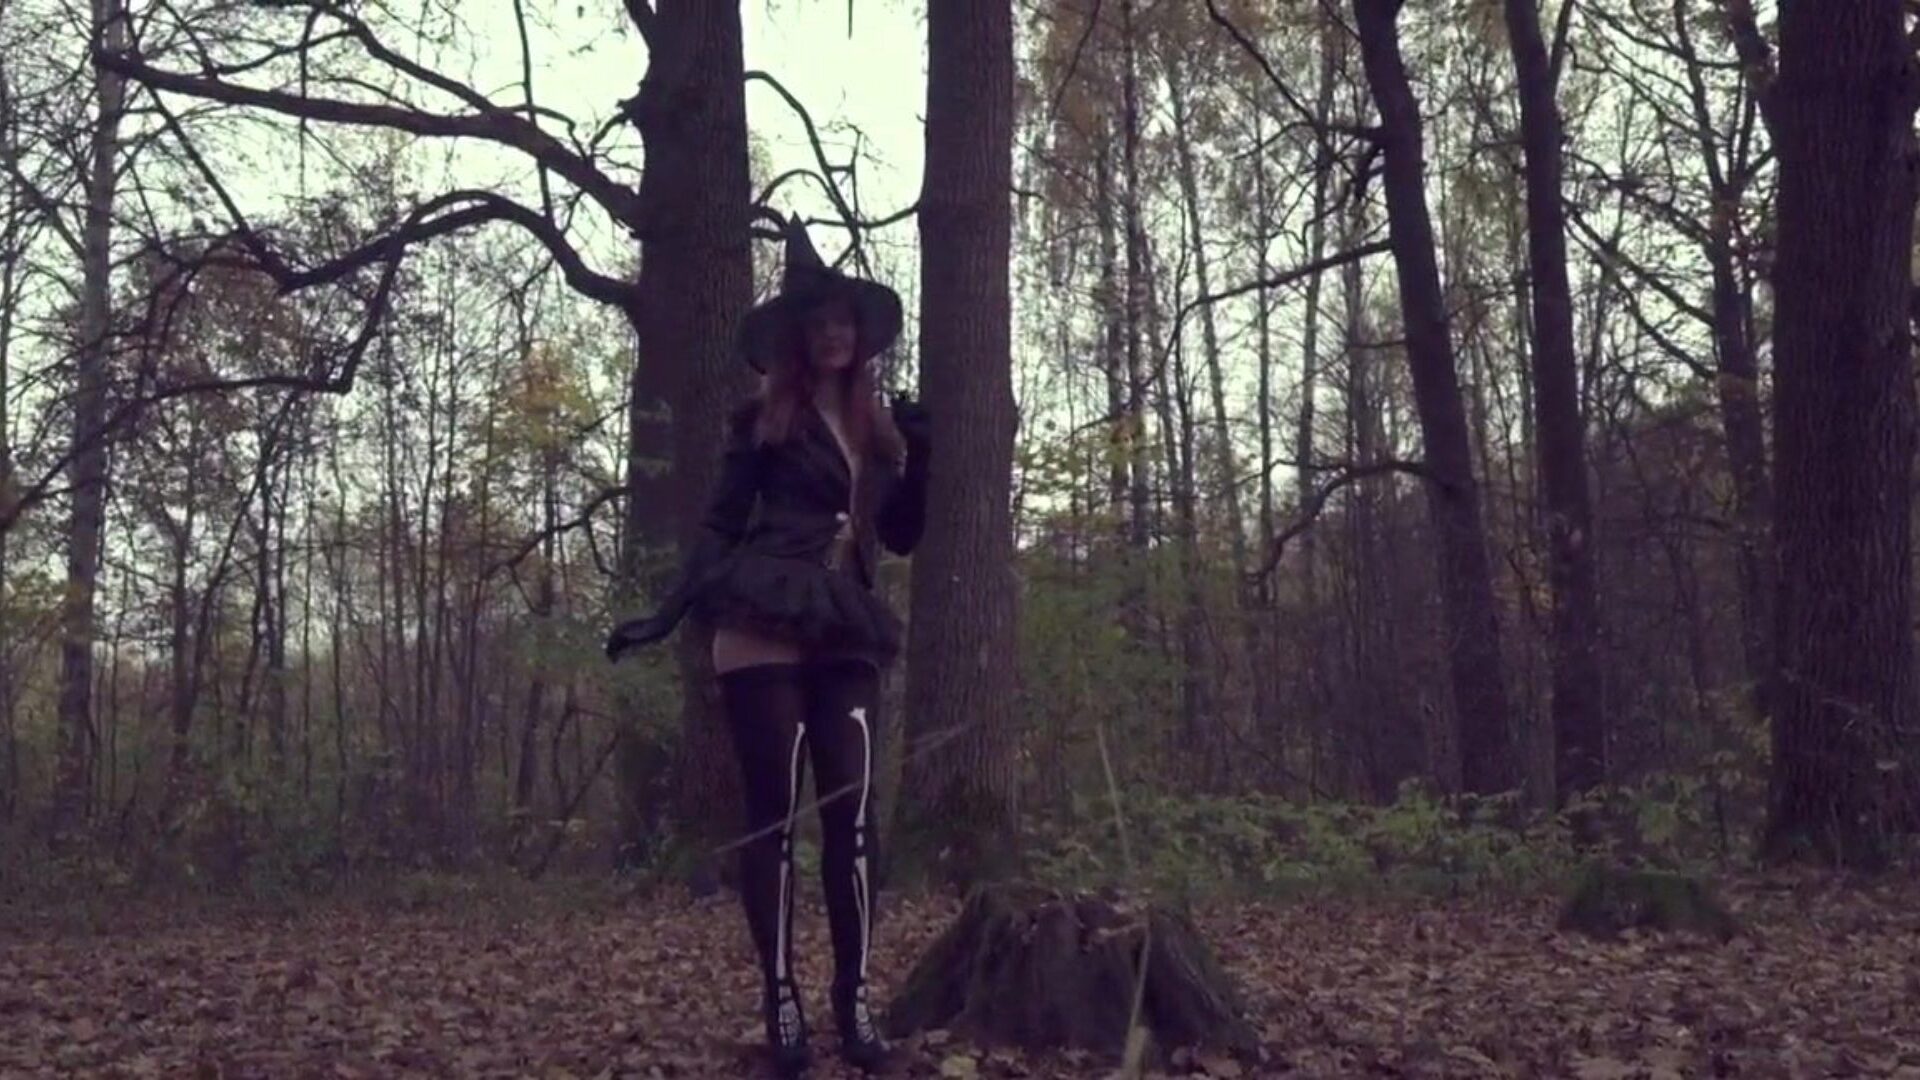 scoate-mi rochia de halloween jeny smith expusă în pădure urmărește videoclipul complet la jenysmith.net muzică bajun la icons8